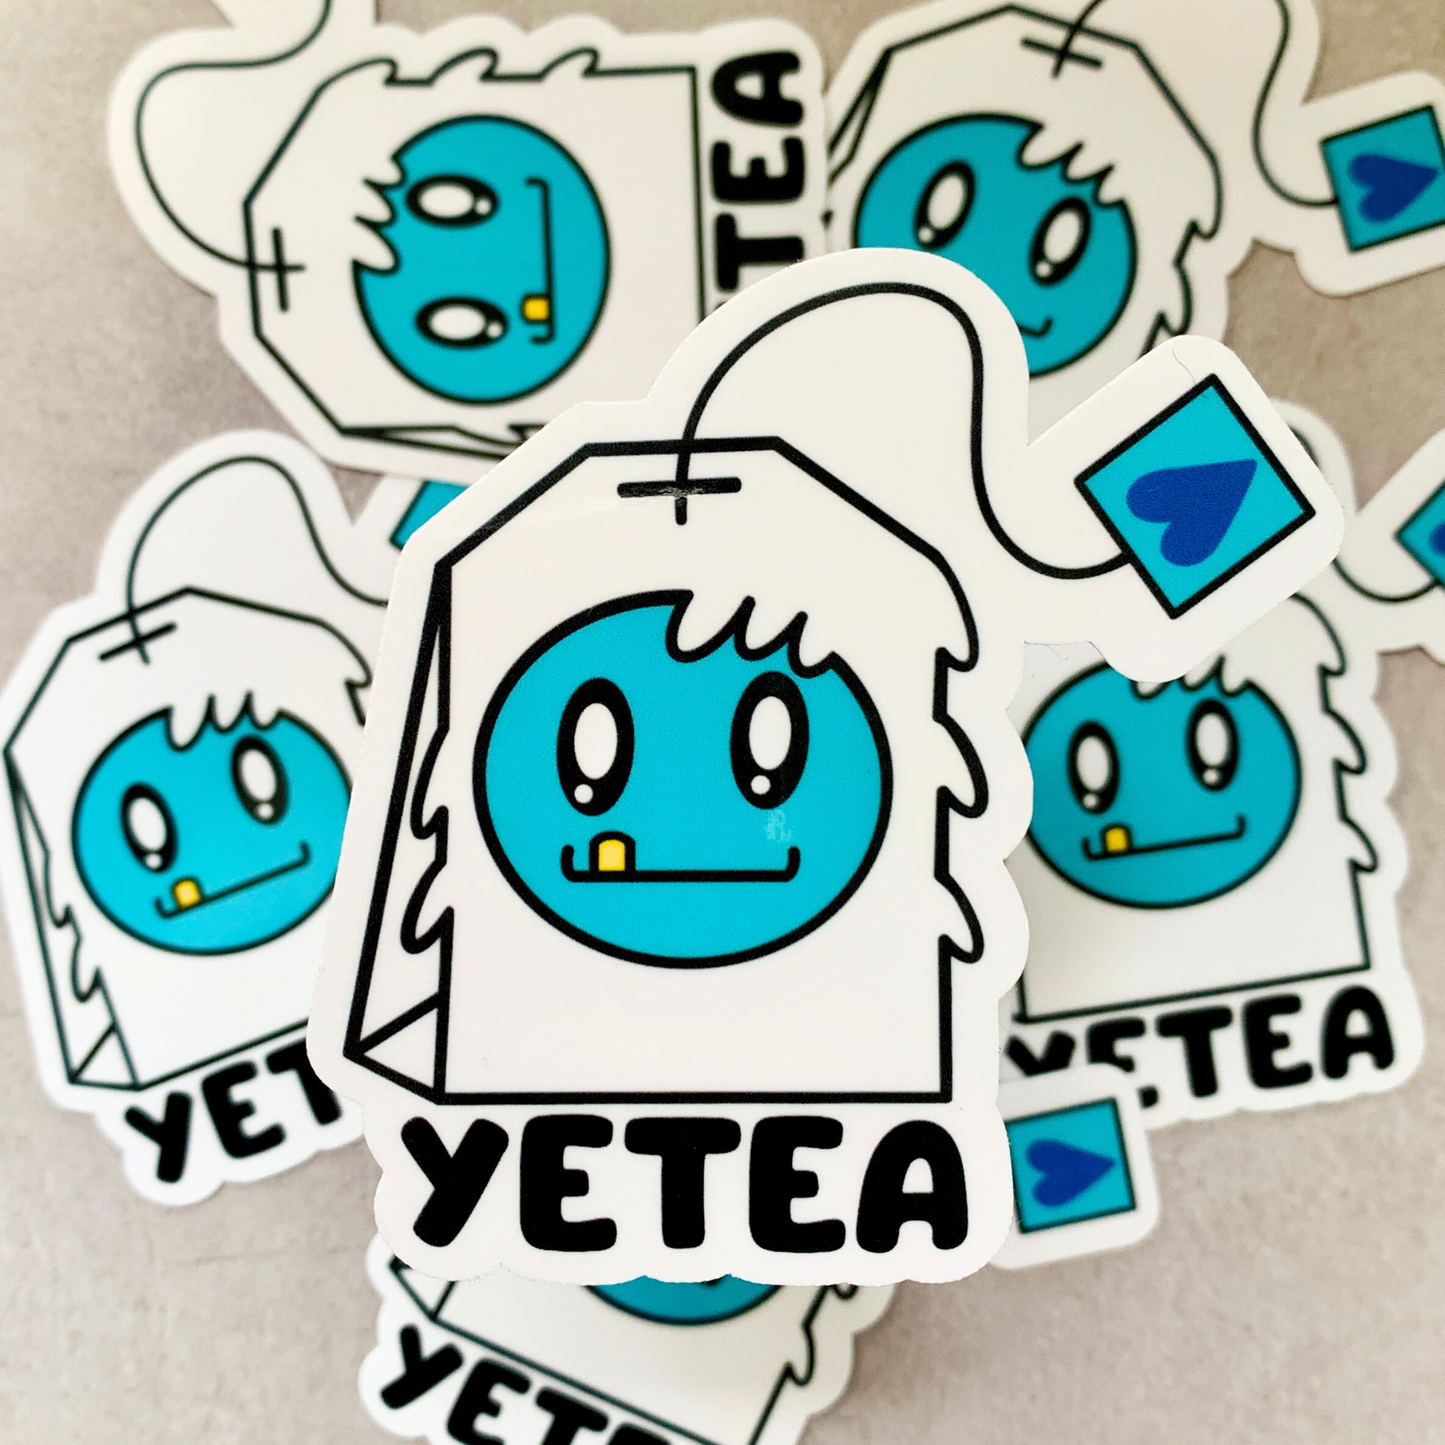 Yetea Vinyl Sticker